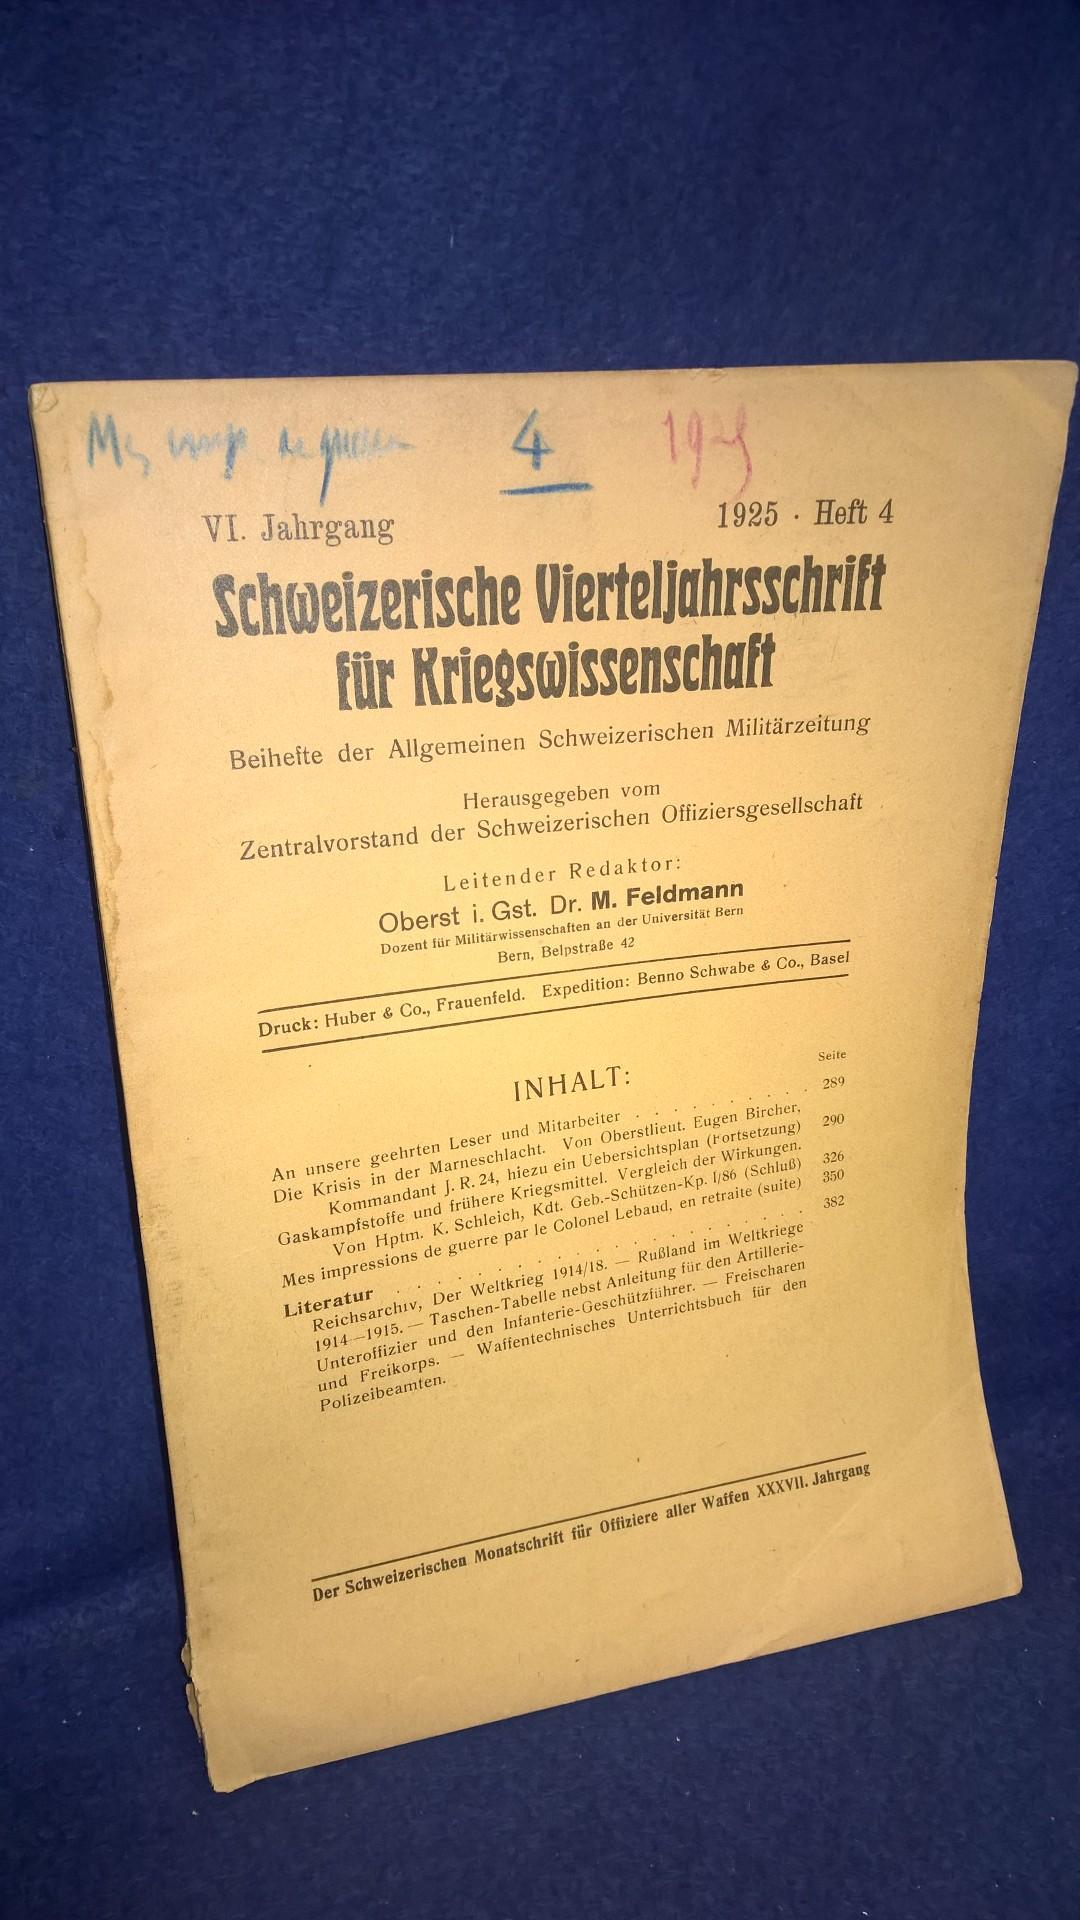 Schweizerische Vierteljahresschrift für Kriegswissenschaften, Heft 4 1924. Aus dem Inhalt: Die Krisis in der Marneschlacht/ Gaskampfstoffe und frühere Kriegsmittel.